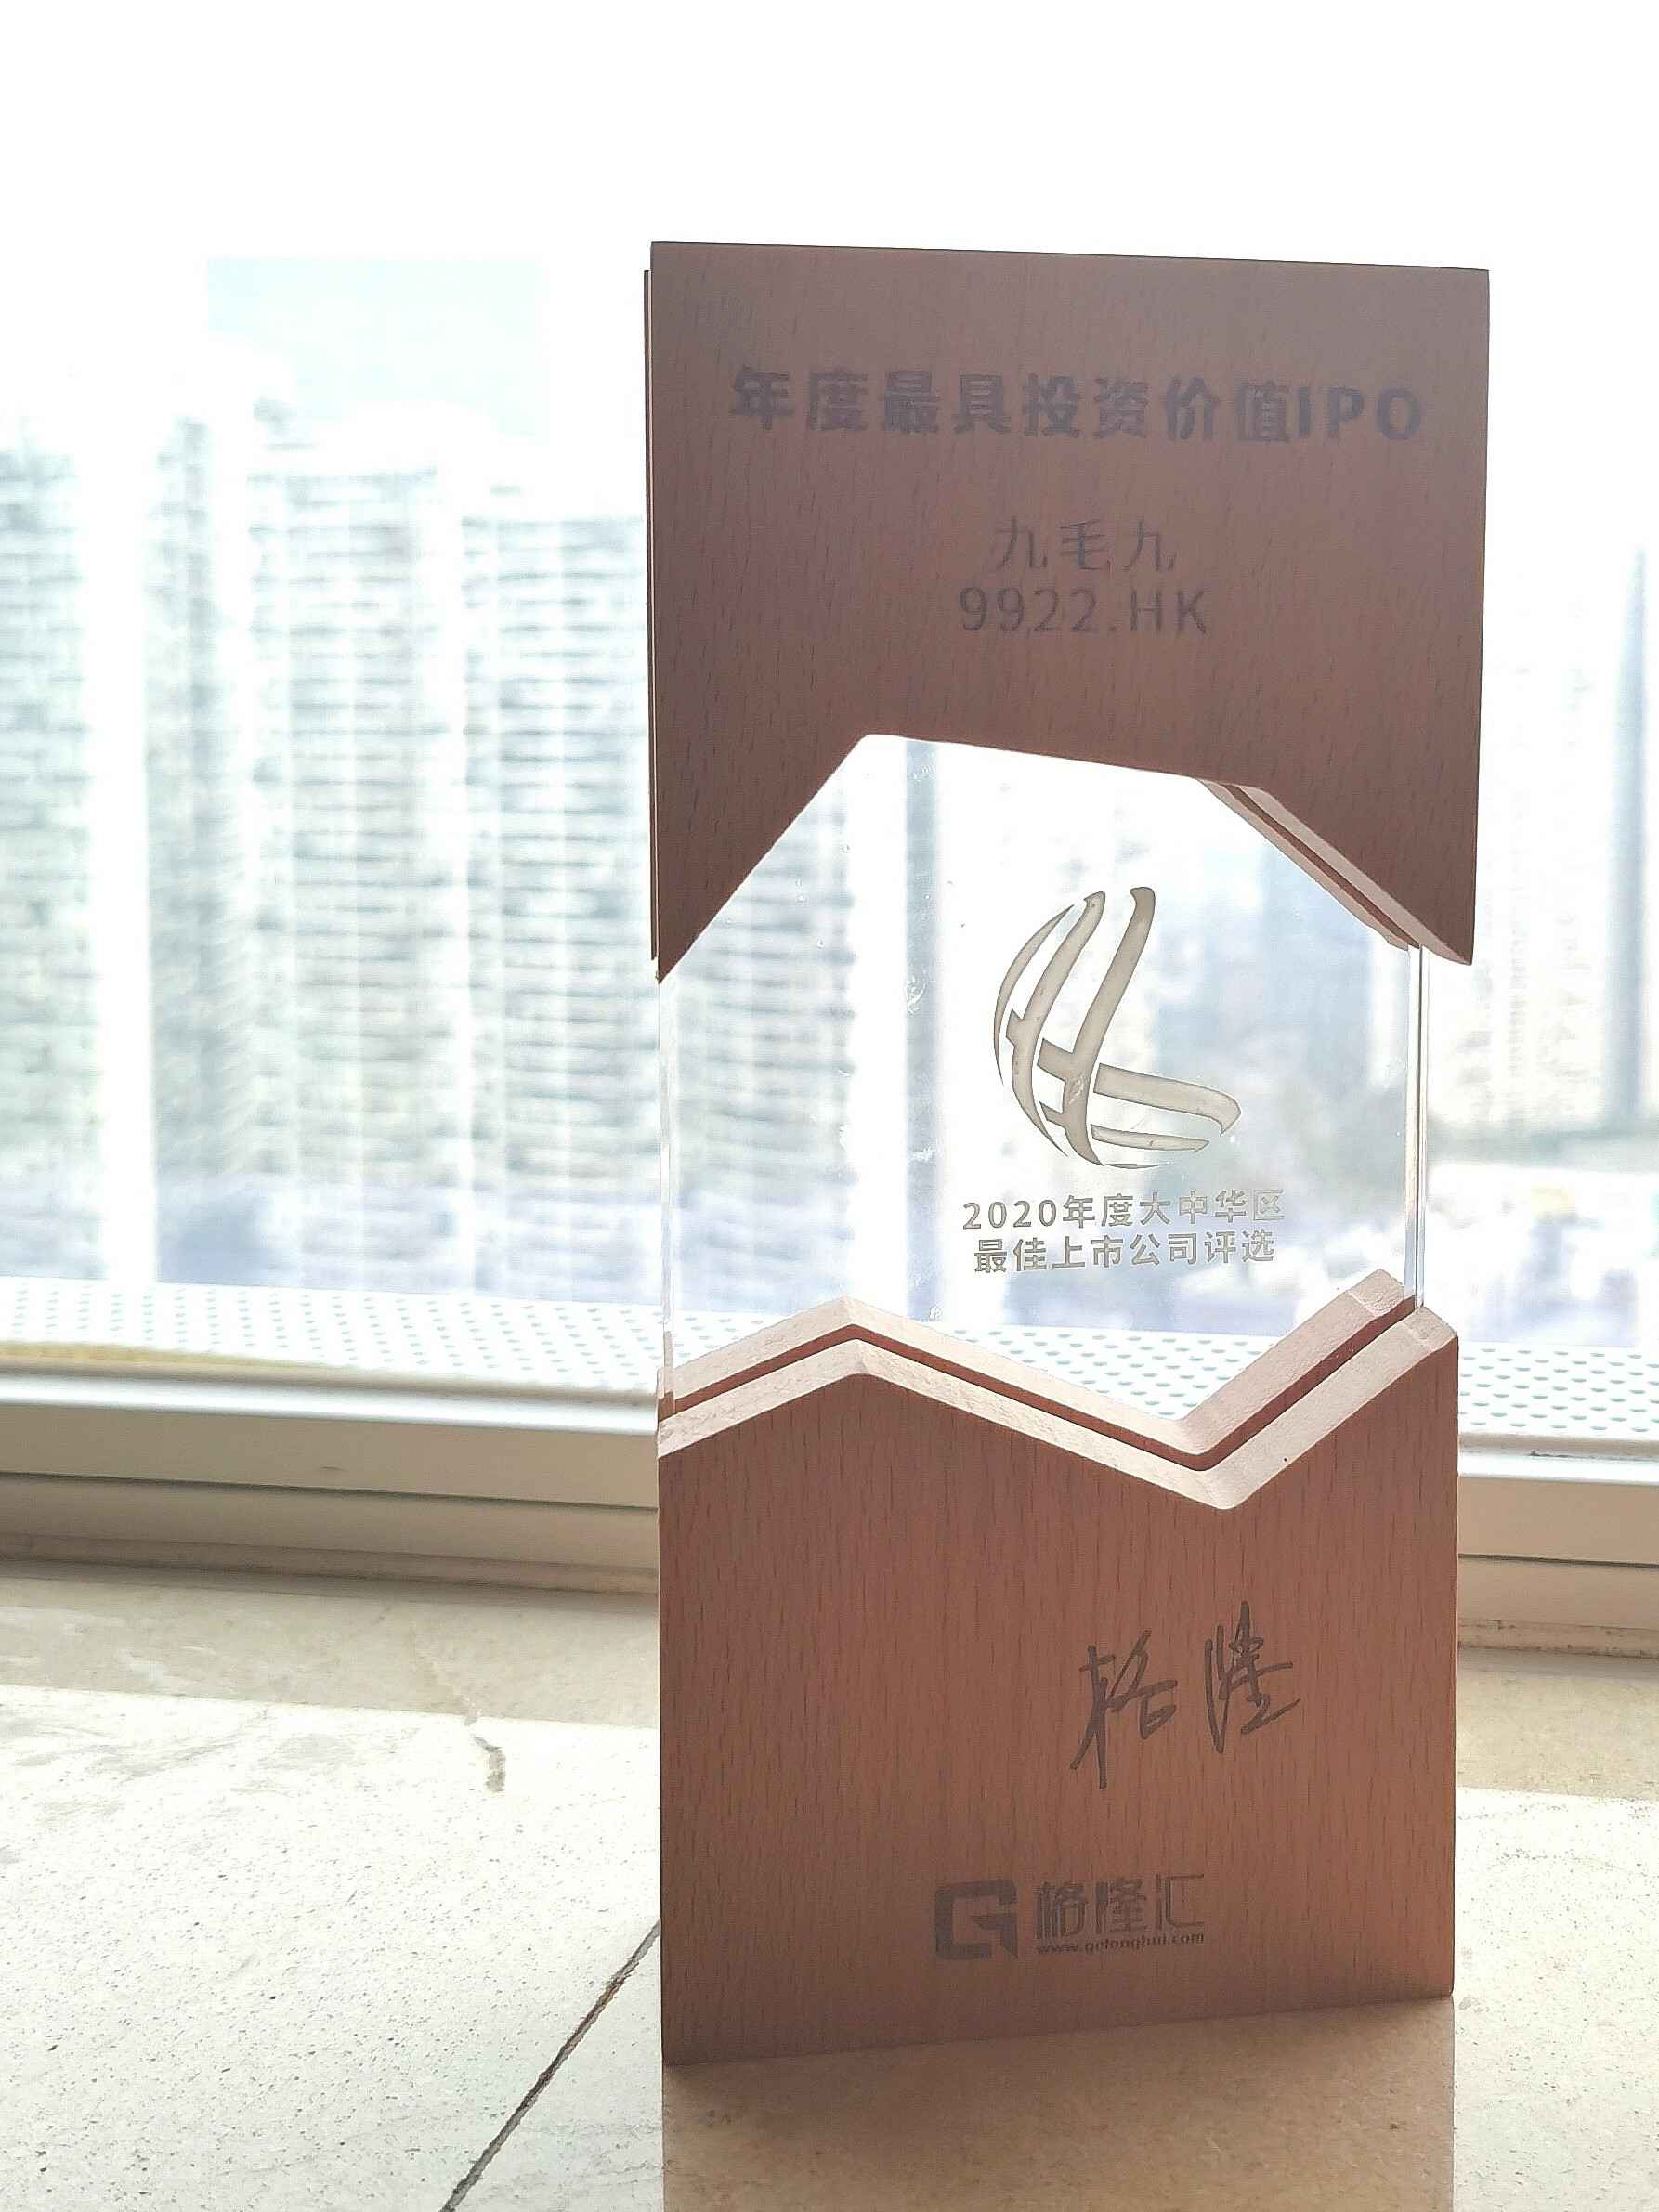 皇冠游戏官方(中国)有限公司官网荣获“2020年度最具投资价值IPO”